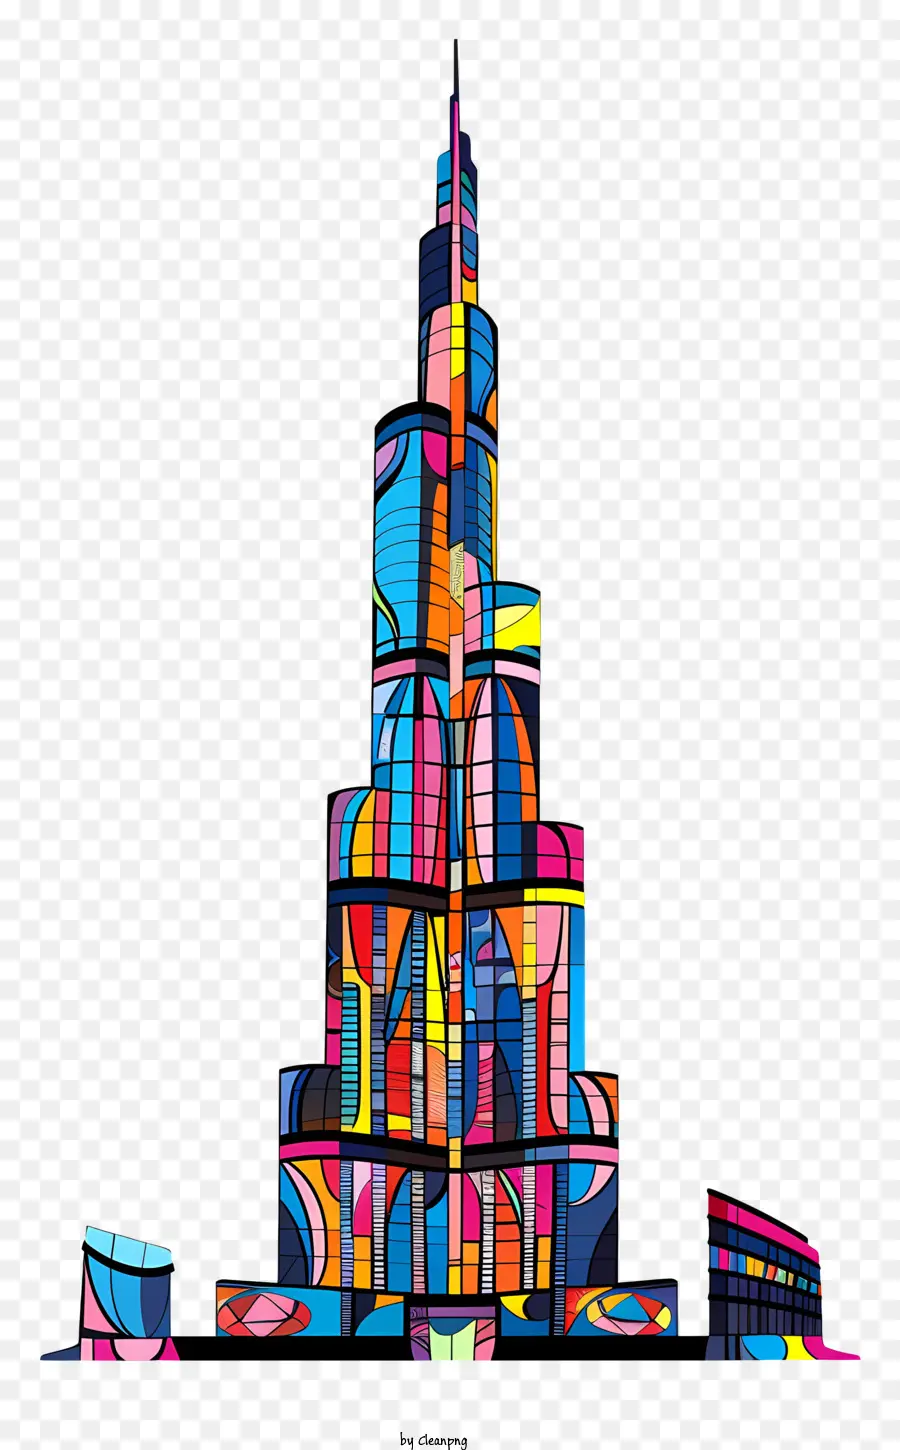 Burj Khalifa Burj Khalifa Skycopper - Minh họa kỹ thuật số của tòa nhà chọc trời Burj Khalifa mang tính biểu tượng